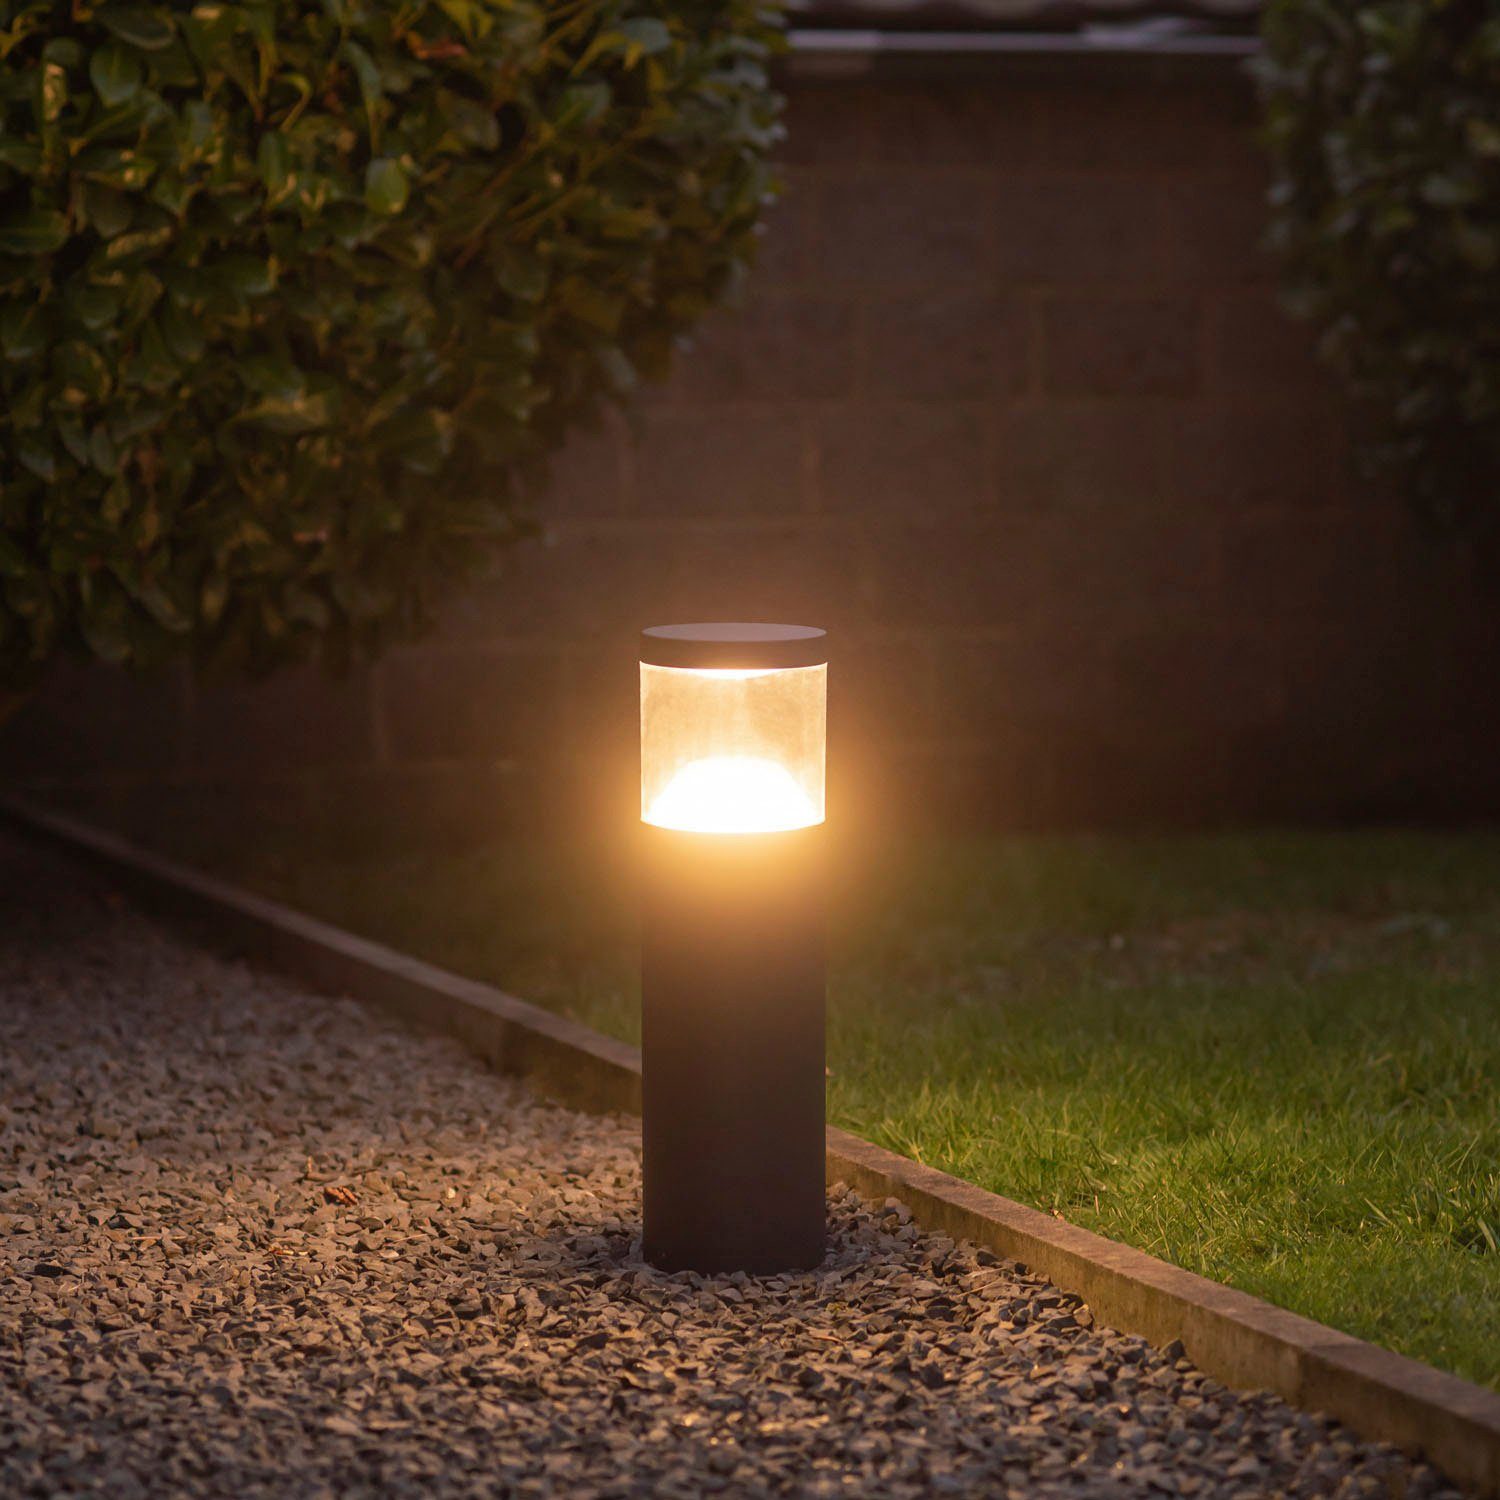 Paco Wegeleuchten integriert, GIULIA, 3000K Pollerleuchte Warmweiß, fest Beleuchtung Garten Home LED Beleuchtung Led IP54